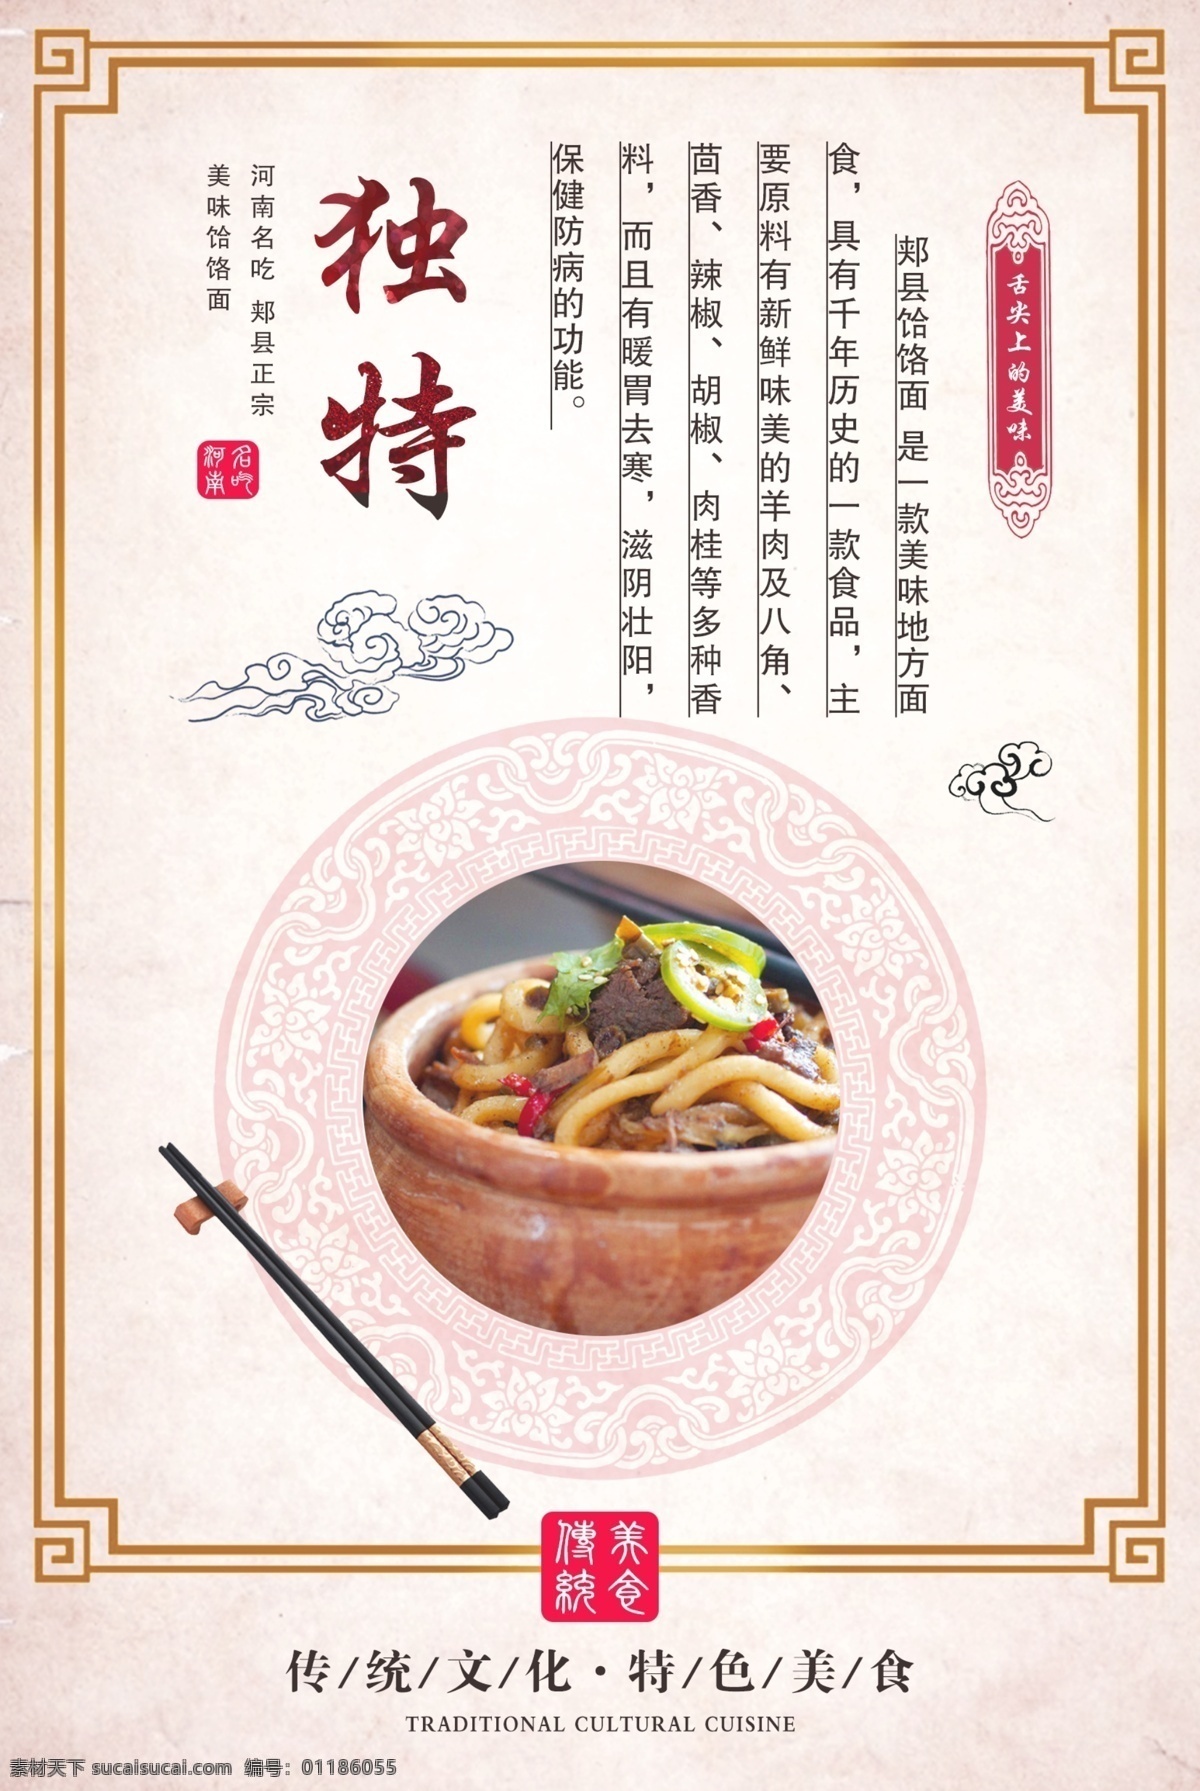 郏县 饸 饹 特色 特点 宣传海报 饸饹面 美味 劲道 美食 手工 口感 风味独特 中国风